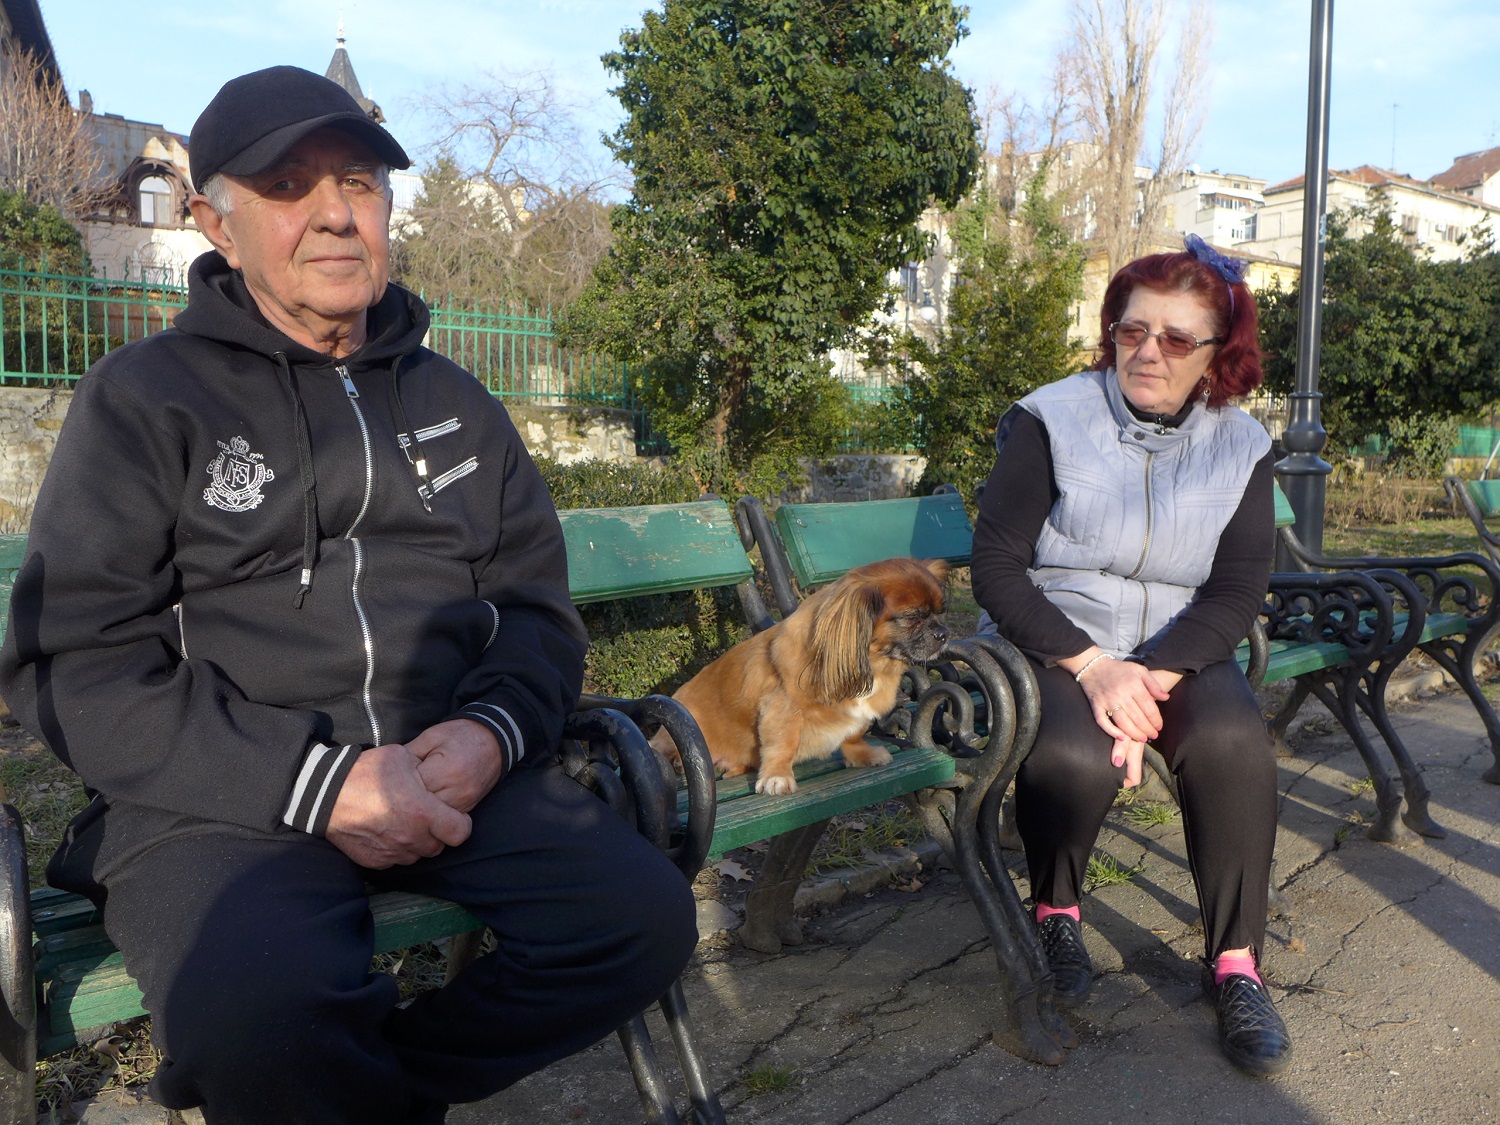 Pufy, un Pékinois de 10 ans, entouré de Florin et Elena, au parc Cismigiu. « Quand les enfants partent, les parents restent seuls, alors ils prennent un chat ou un chien », analyse Florin, pour qui « les chiens t’aiment sincèrement ».